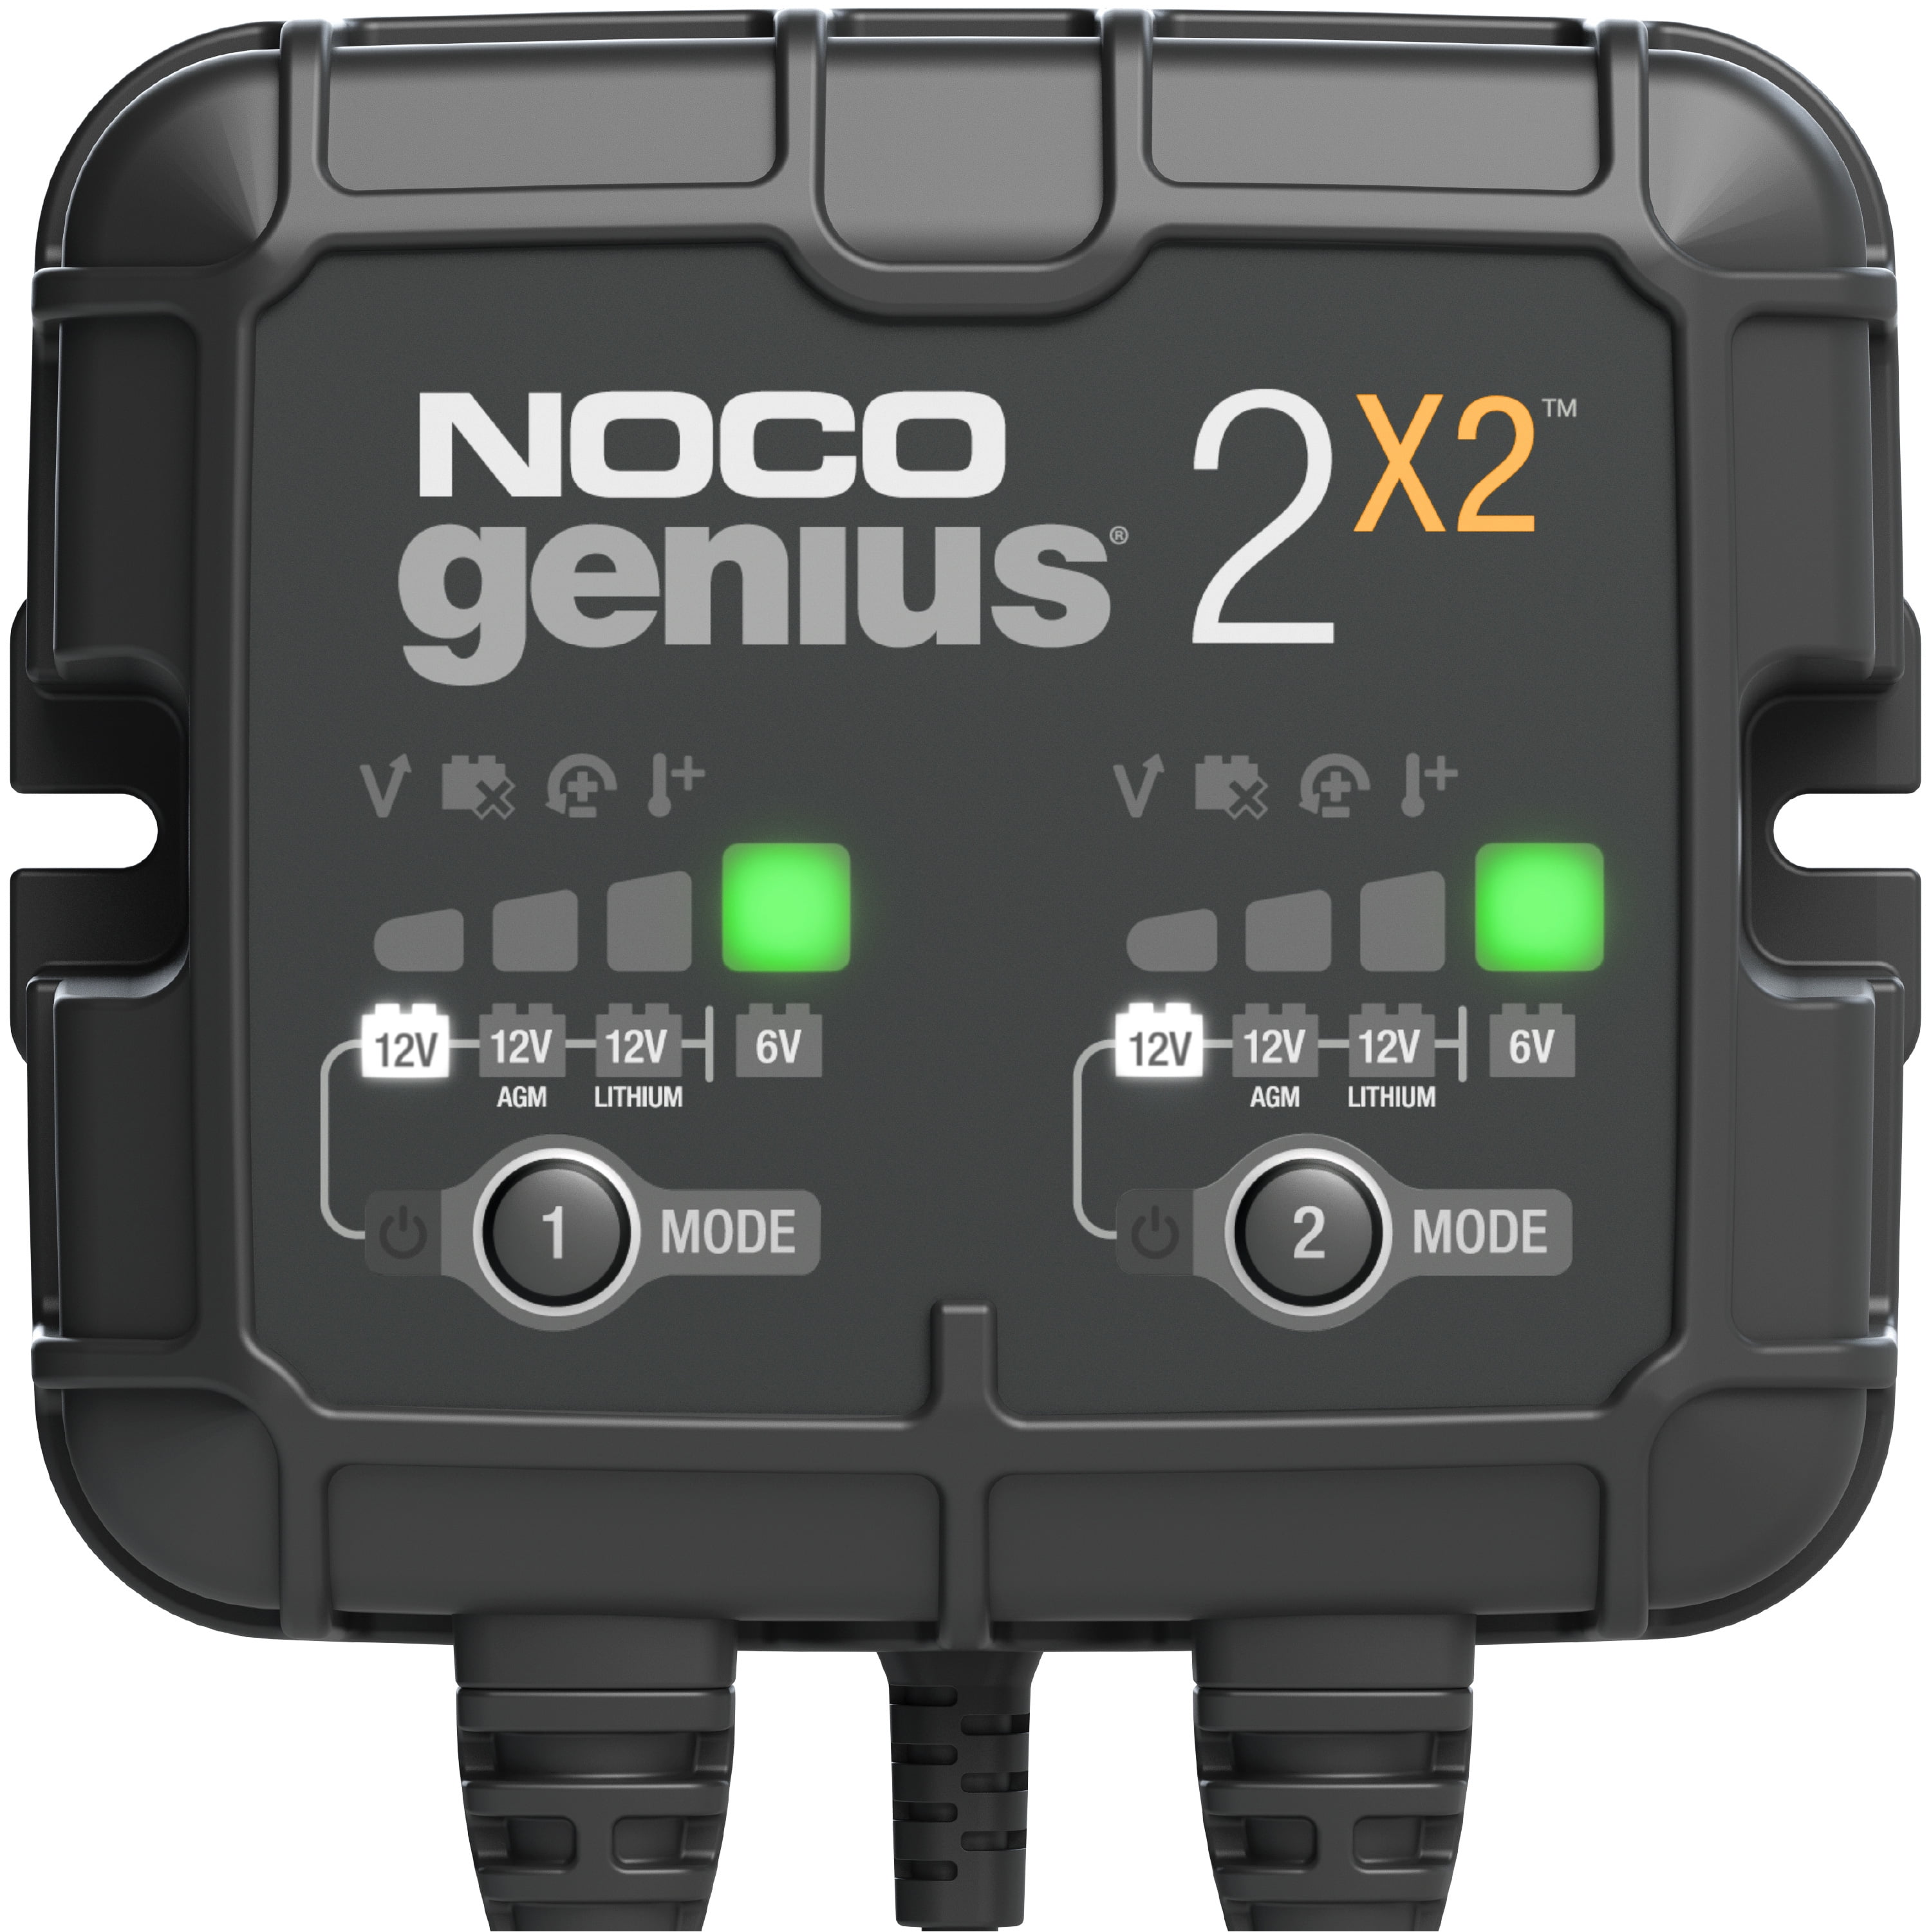 NOCO GENIUS 2X2 6V/12V 2-Amp 2-Bank Smart Battery Charger - GoBatteries